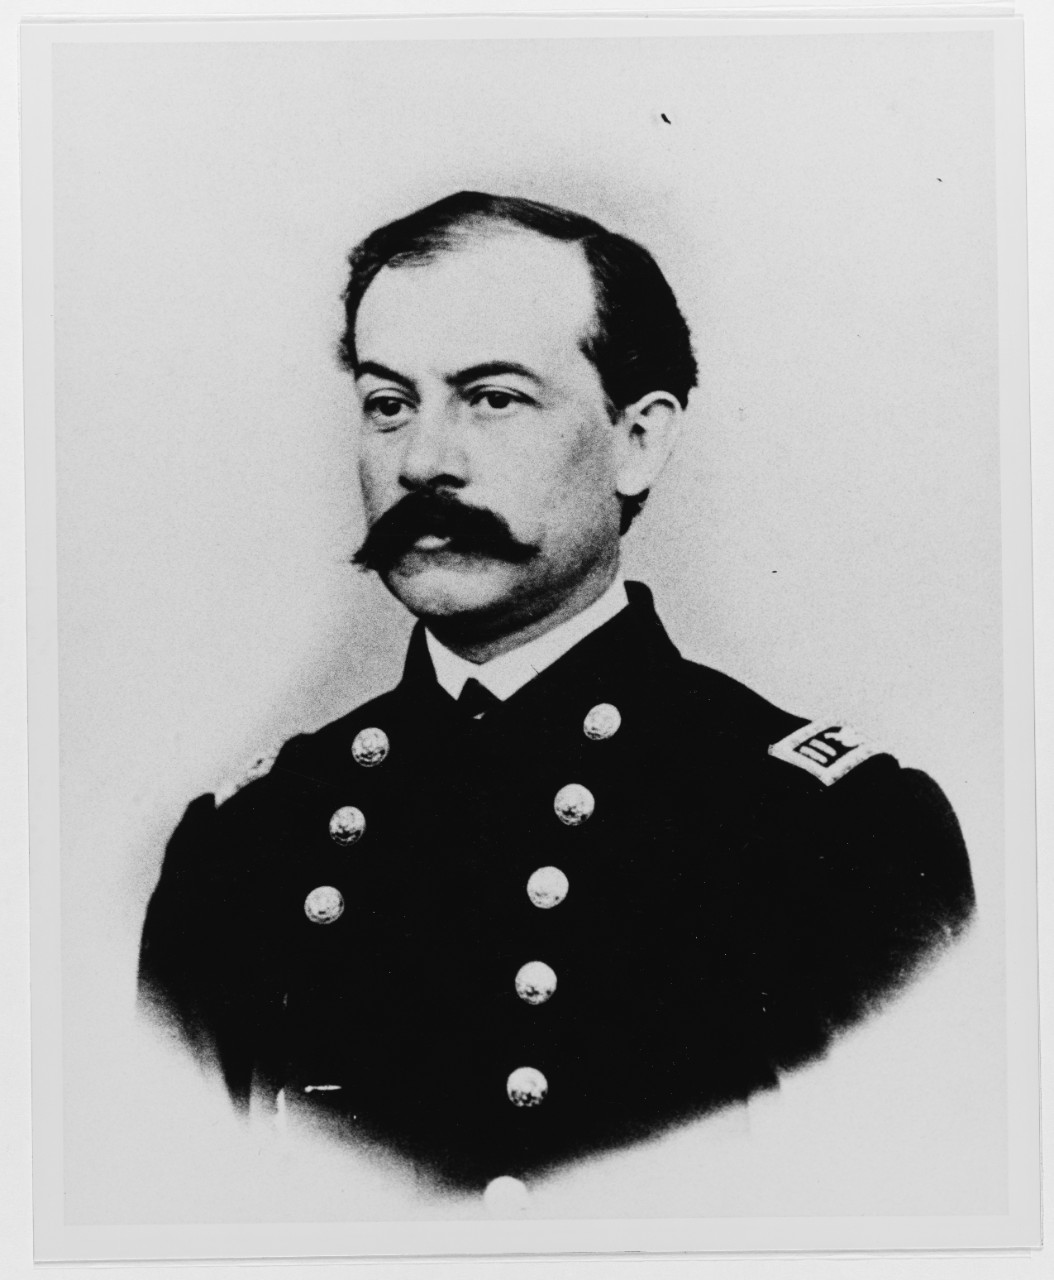 Lieutenant Henry T. Skelding, USN